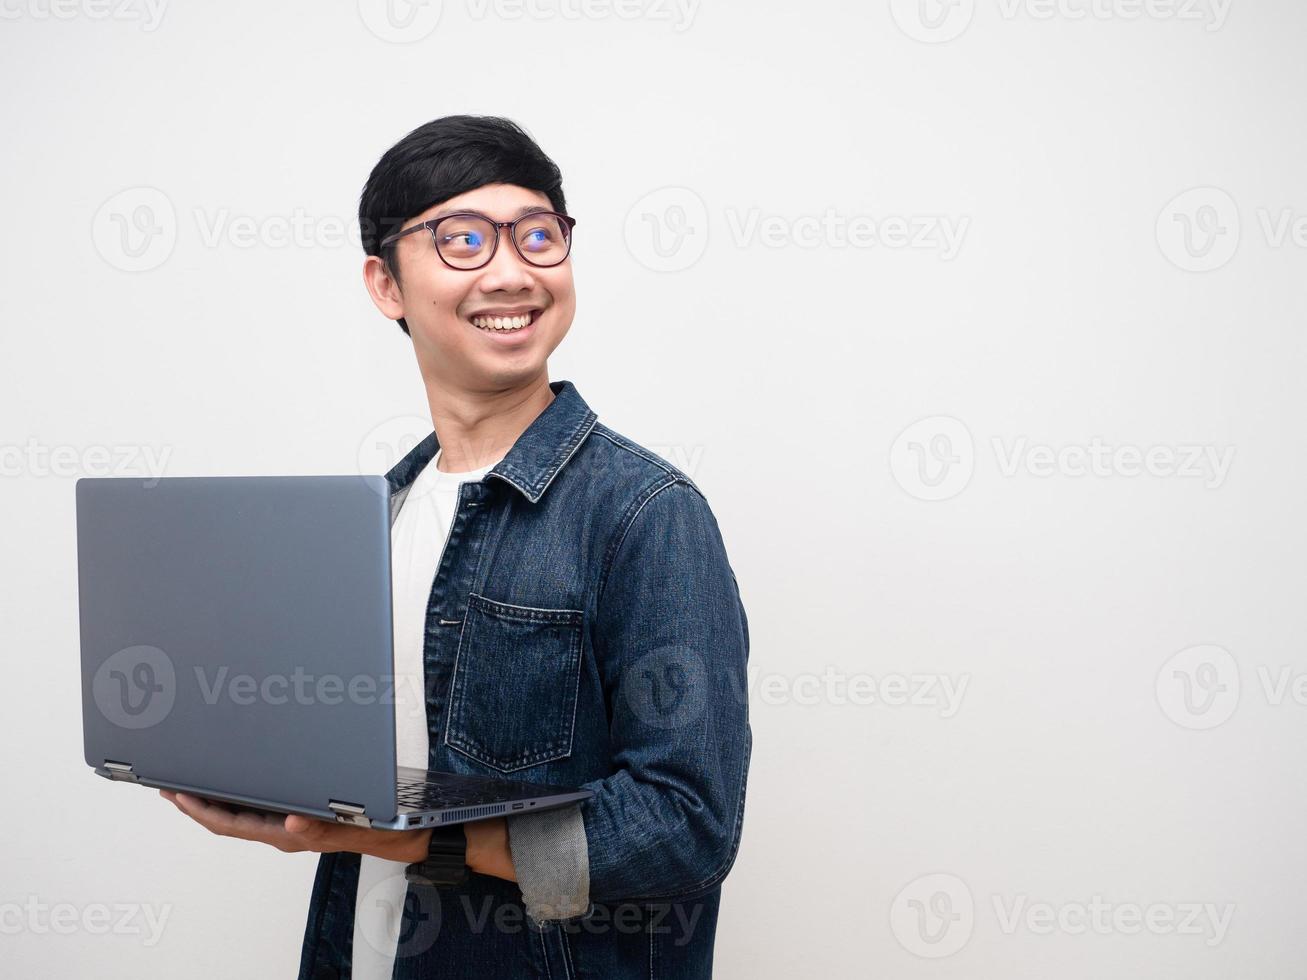 camisa de jeans de homem alegre segurando laptop virar o rosto olhando para o espaço de cópia isolado foto